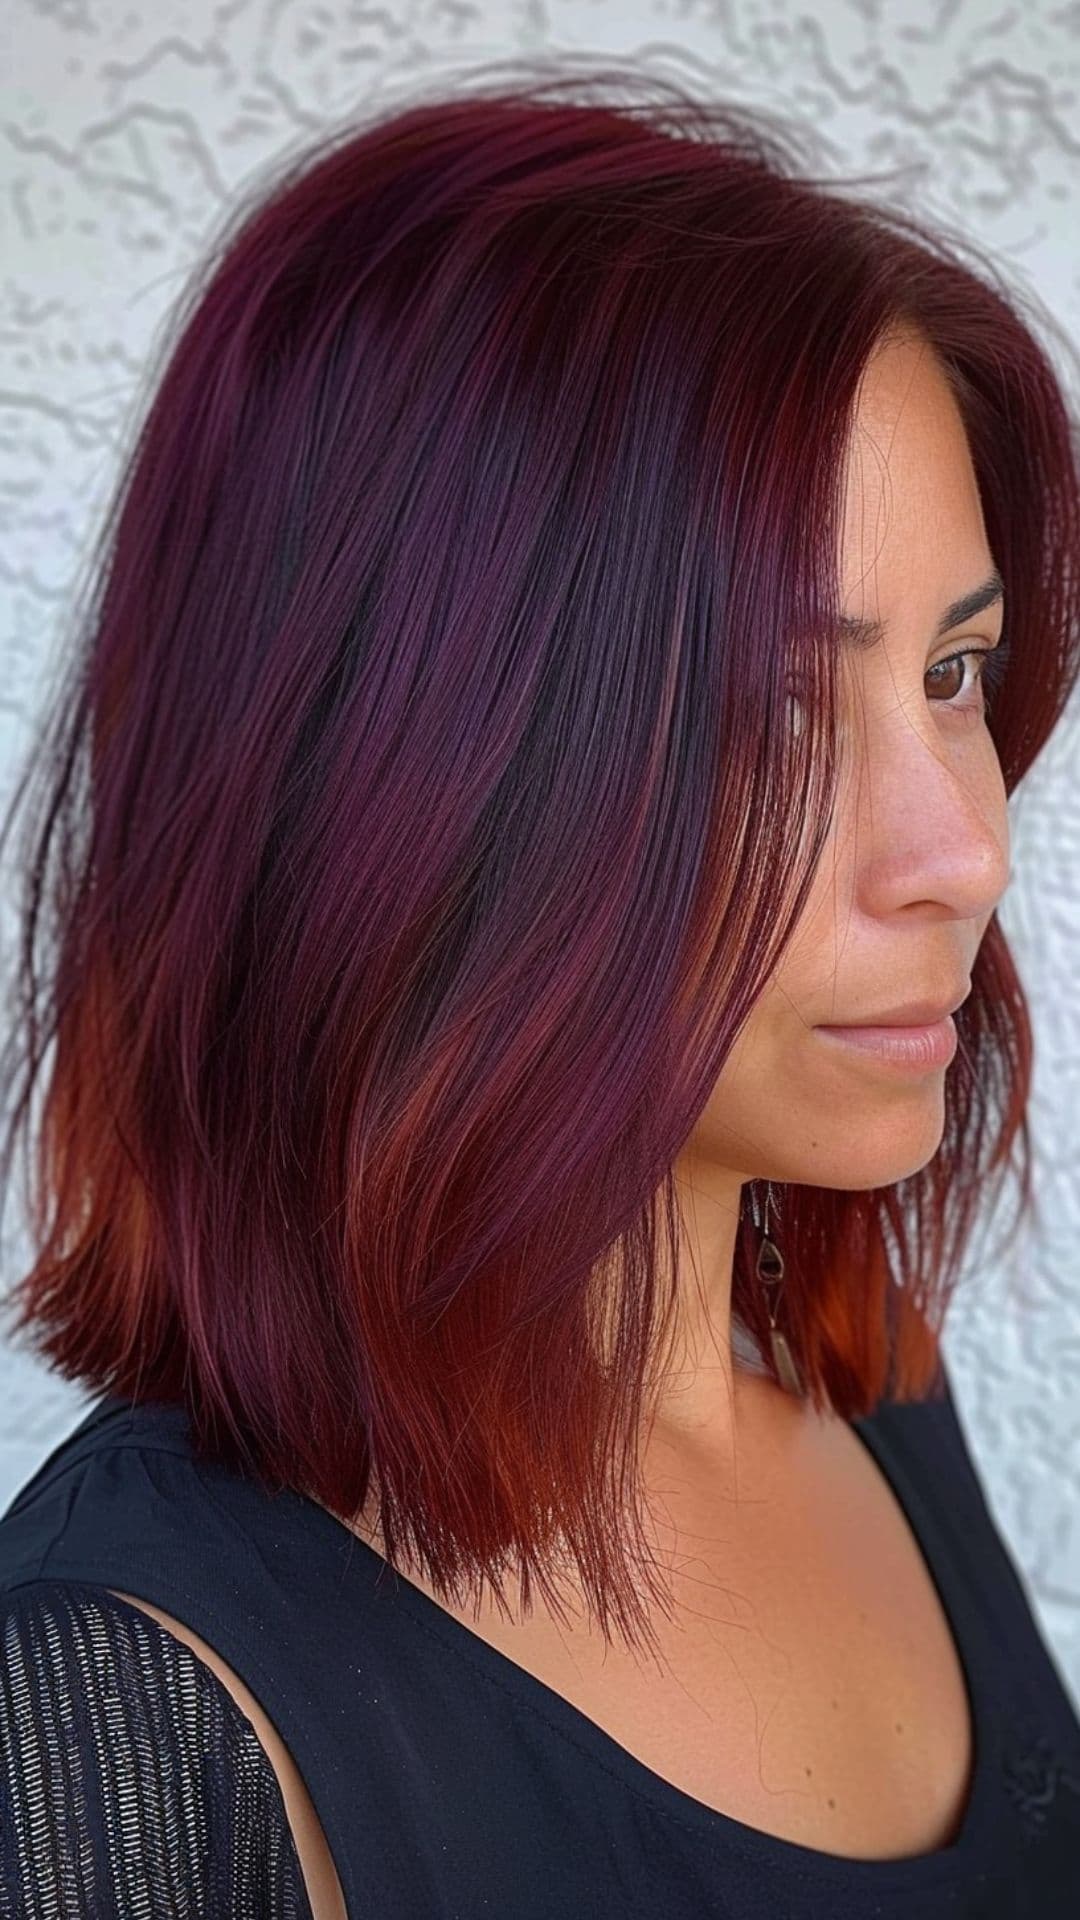 Una mujer modelando un cabello color burdeos intenso.